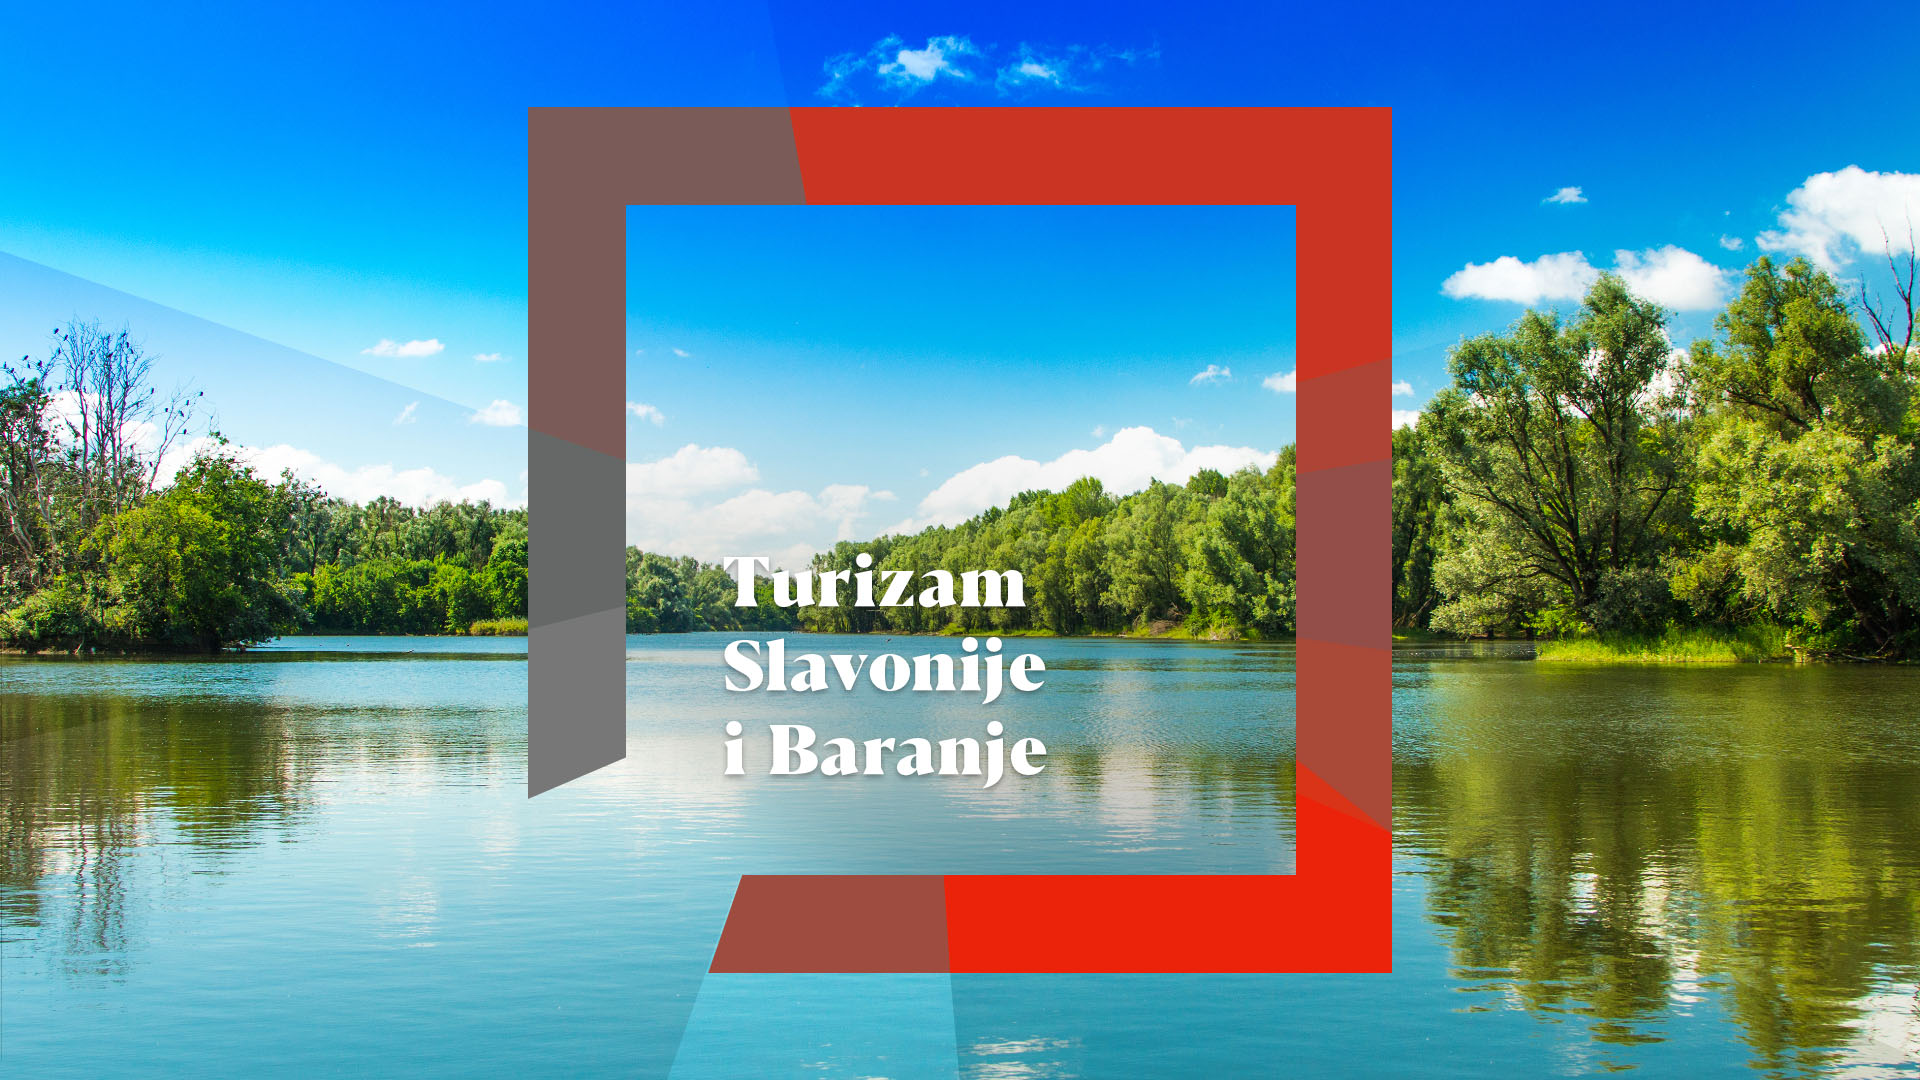 Turizam Slavonije i Baranje